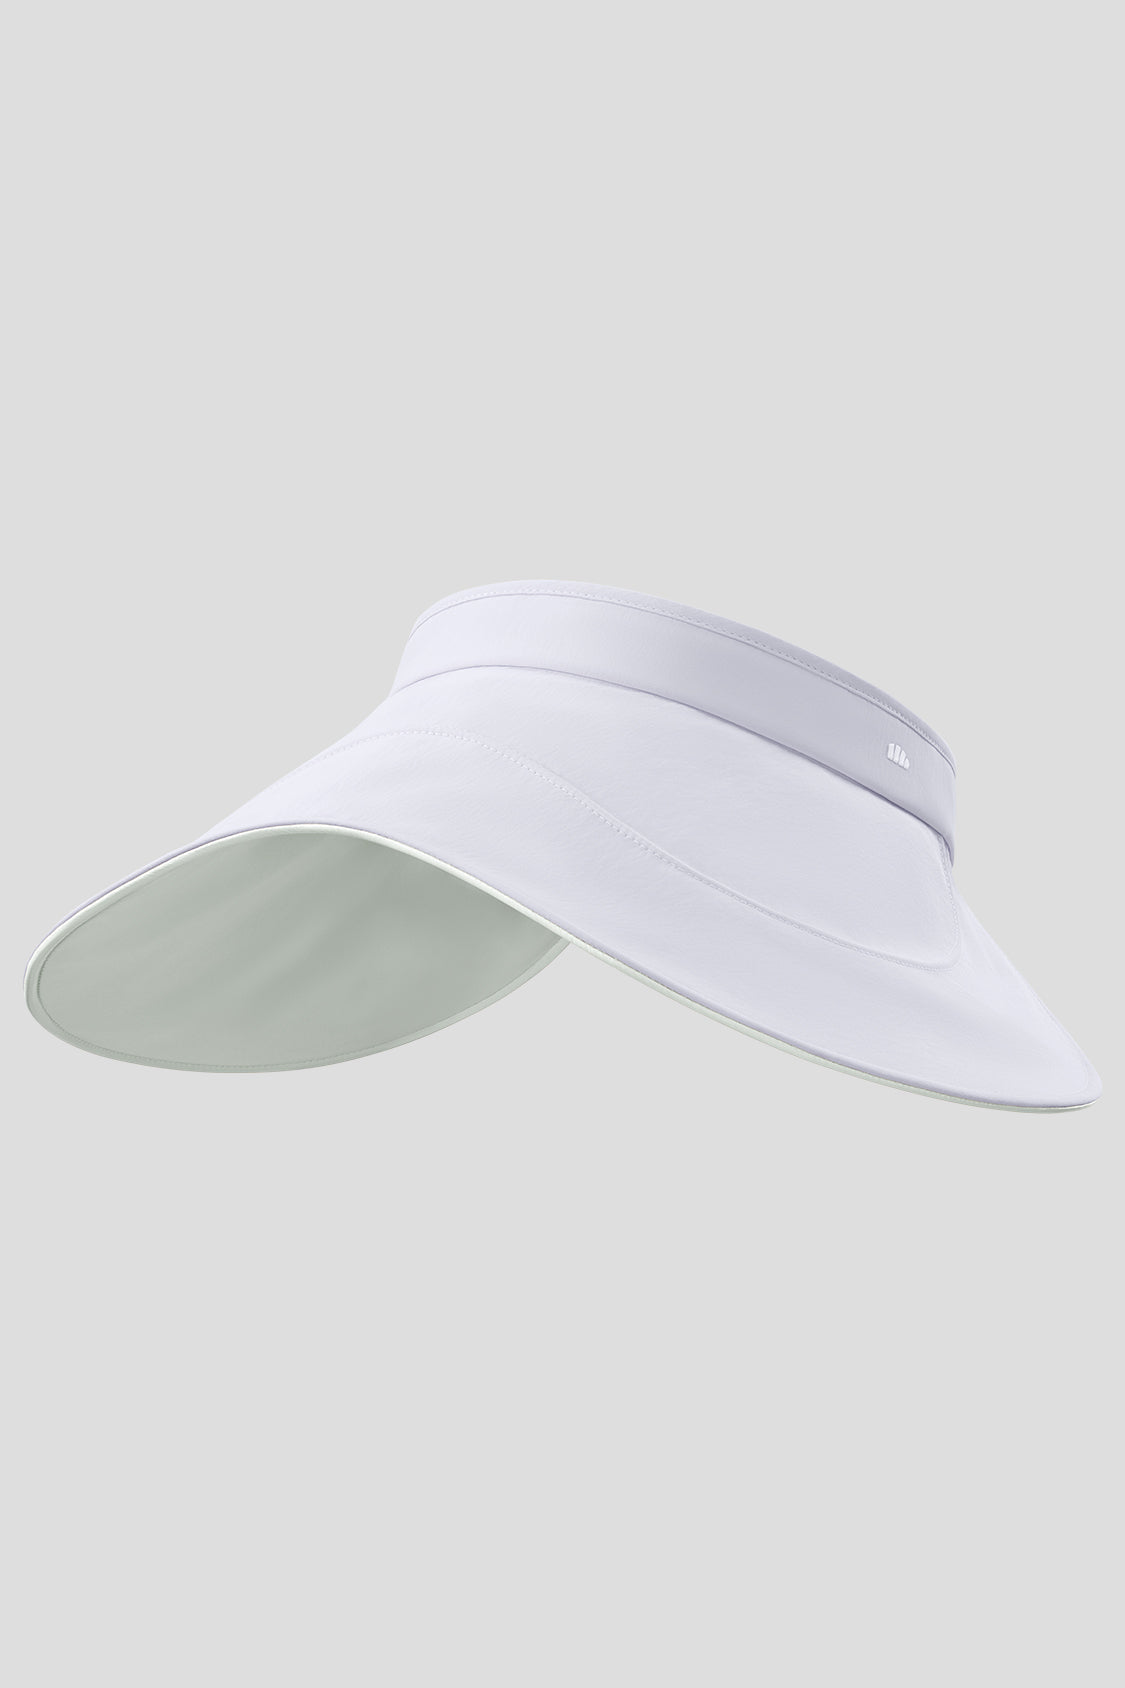 Guji Omelette - Women's Open-top Sun Hat UPF50+